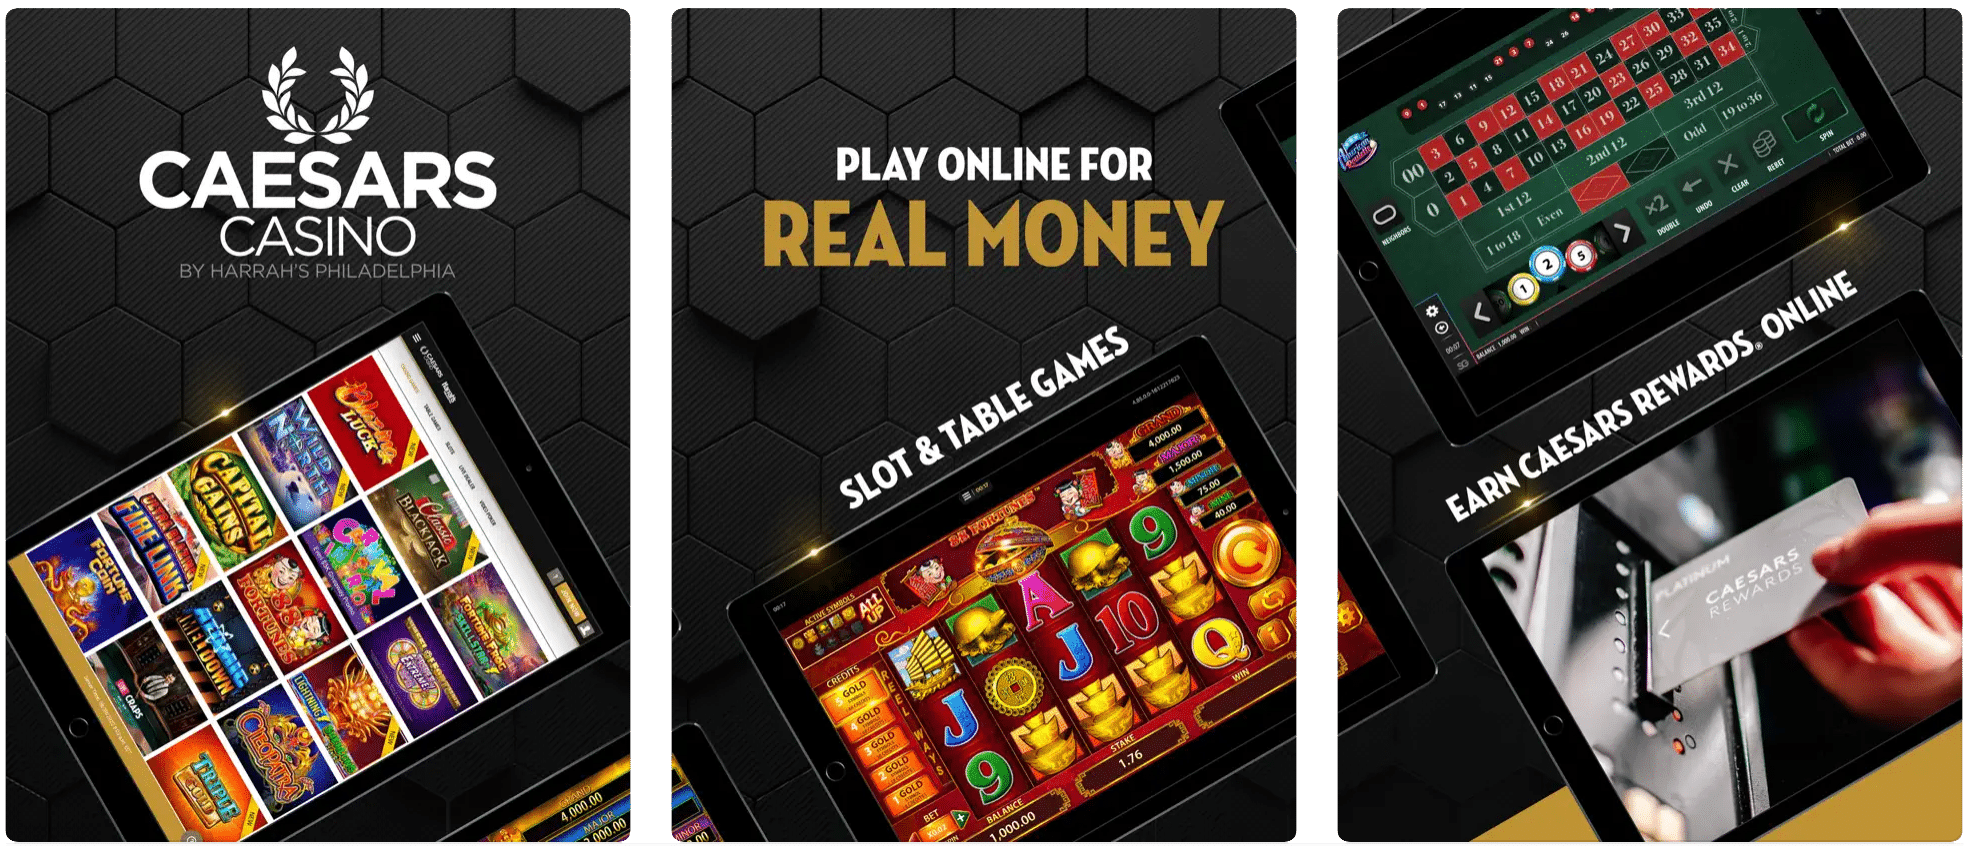 Caesars Casino, App Store Screenshot